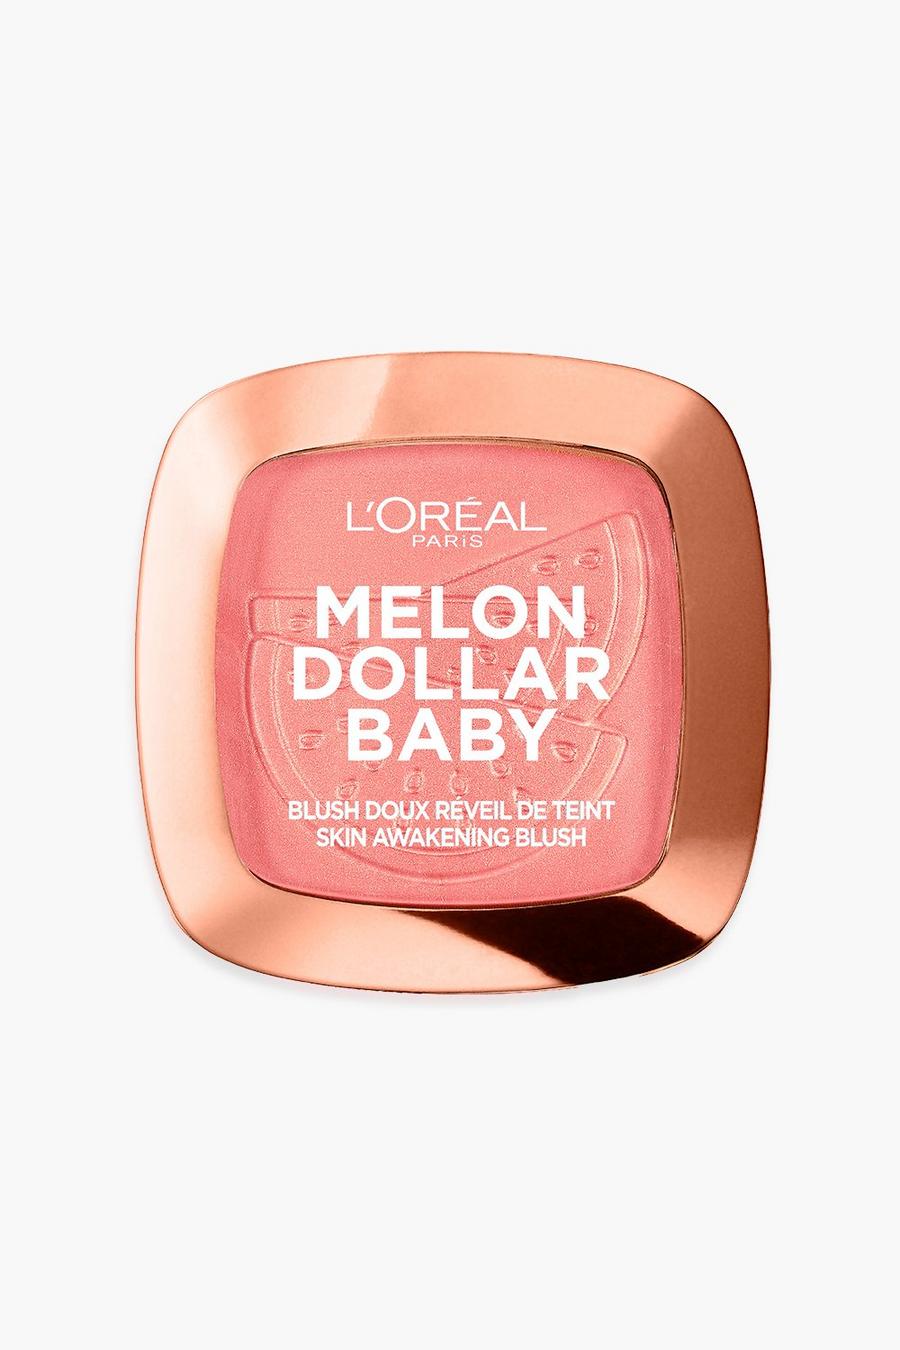 L'Oréal Paris - Blush doux réveil de teint Melon Dollar Baby